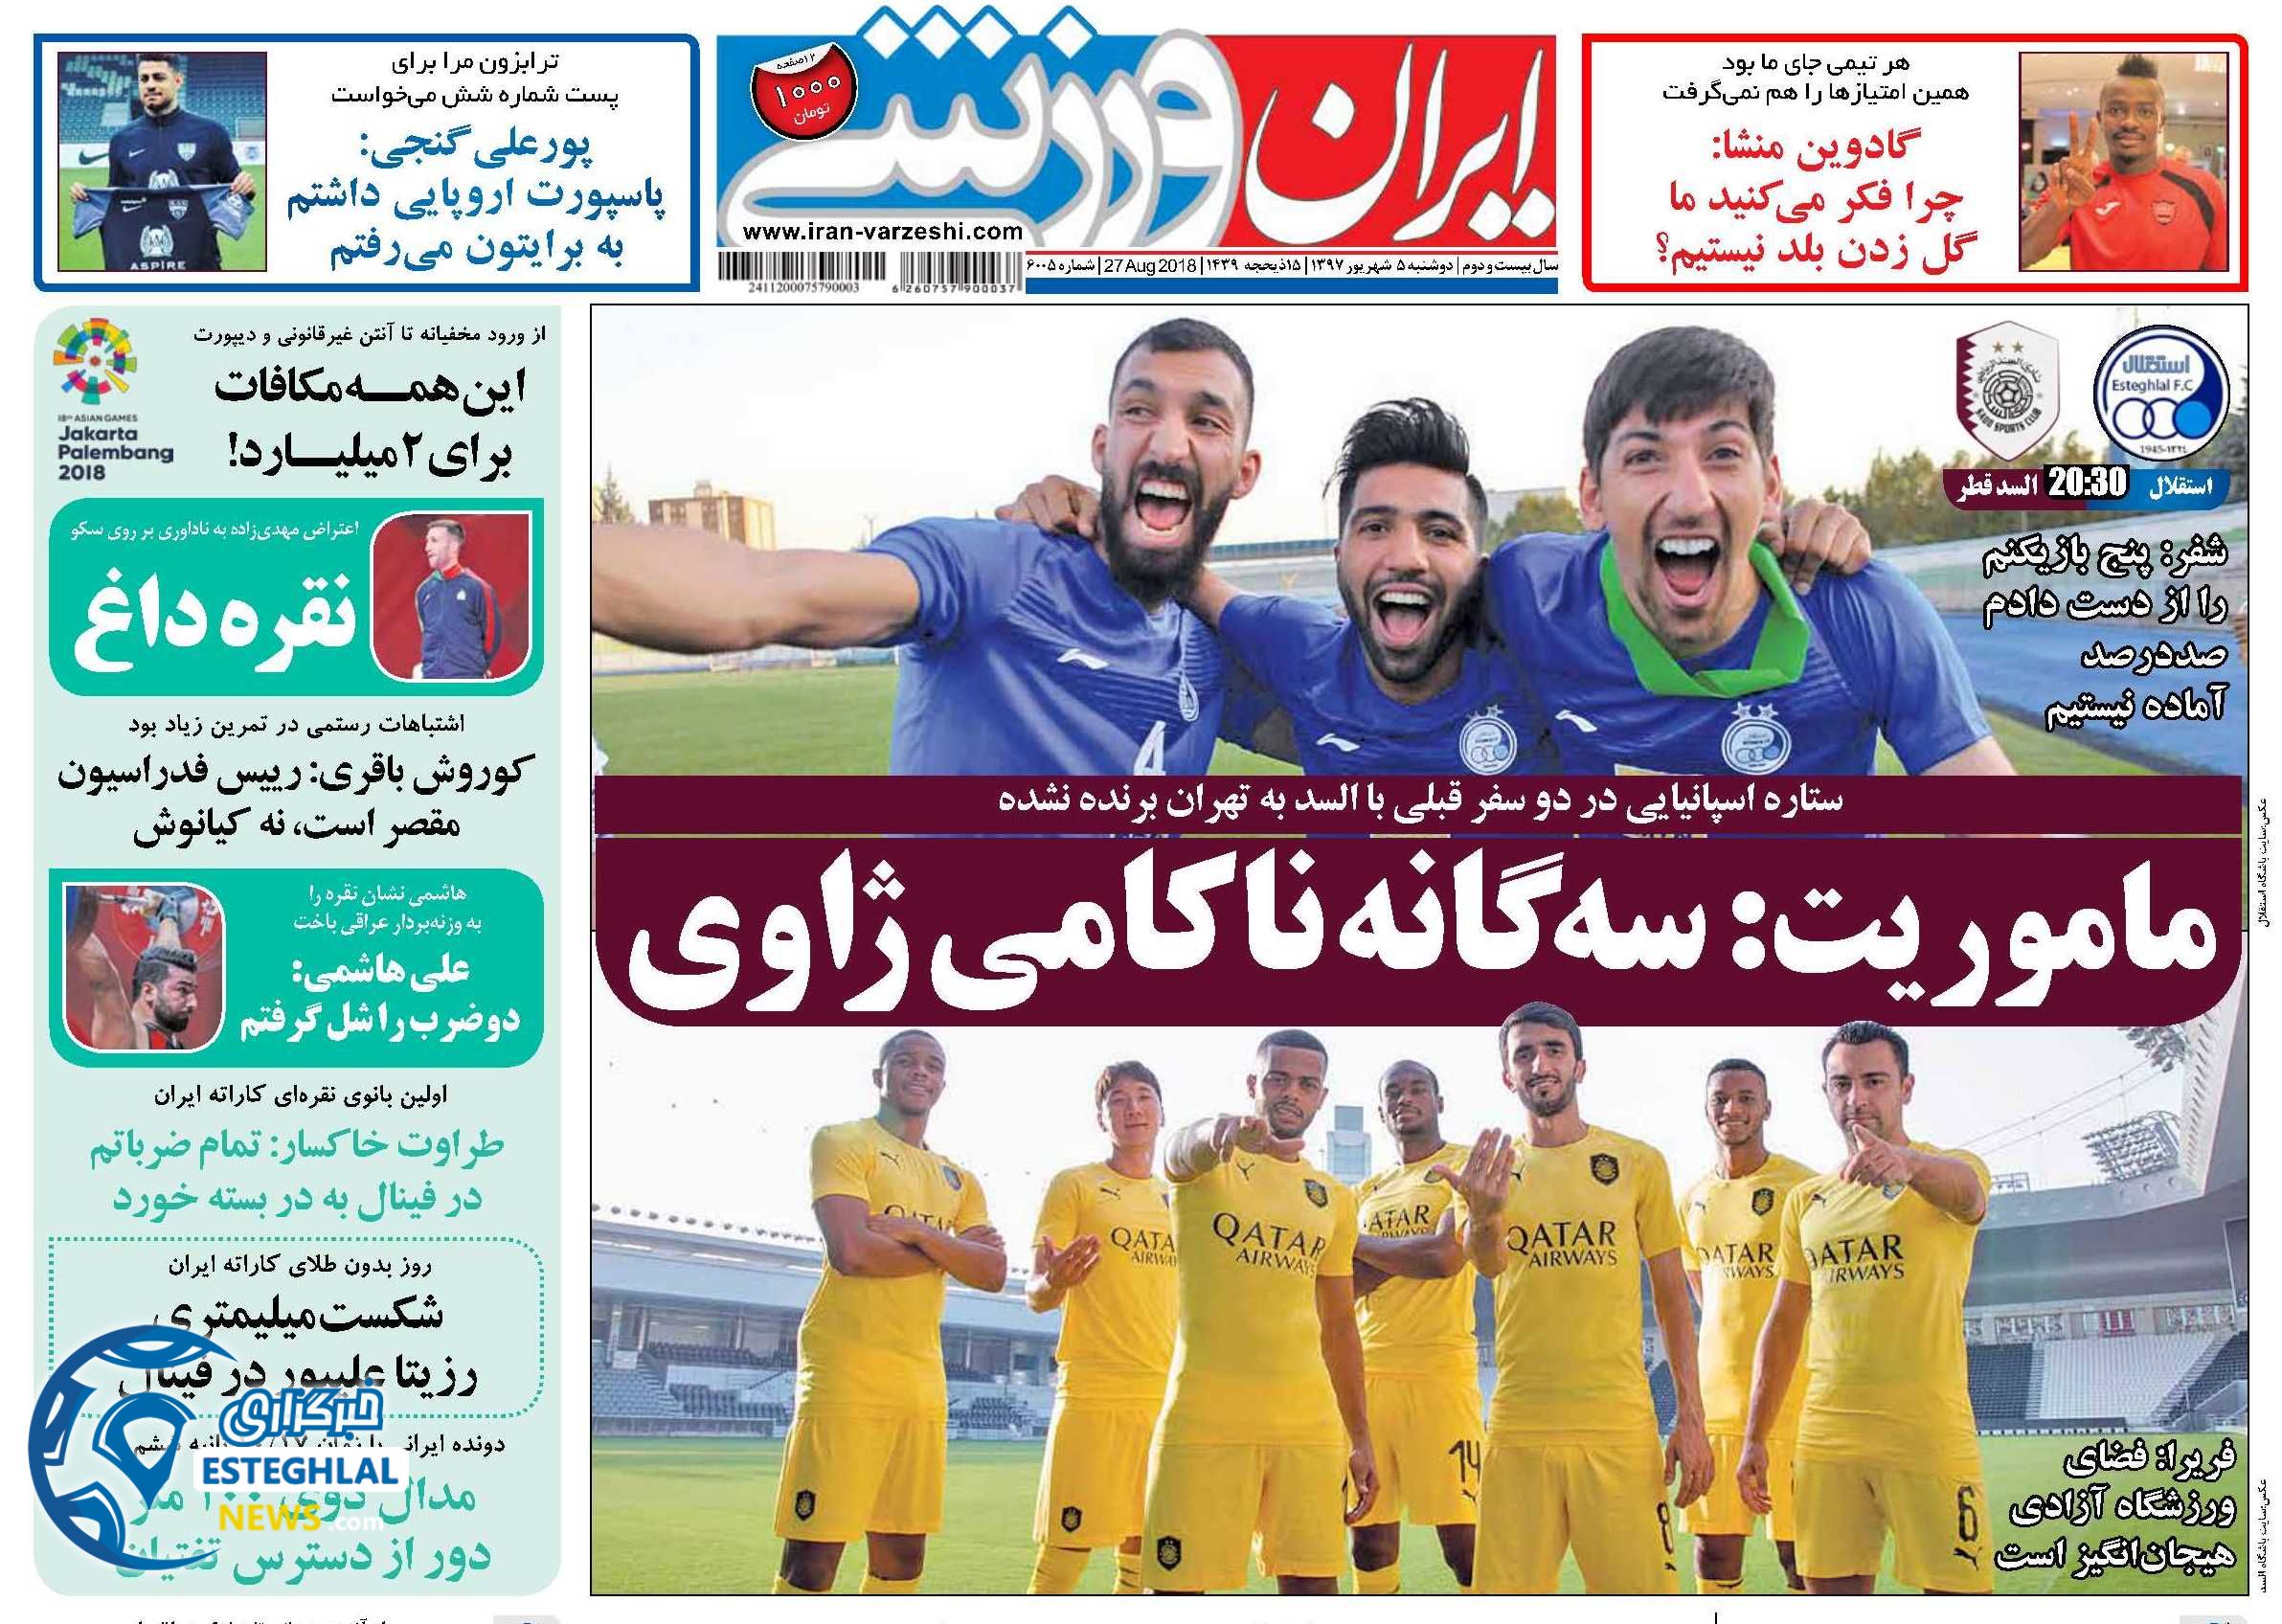 روزنامه ایران ورزشی دوشنبه 5 شهریور 1397